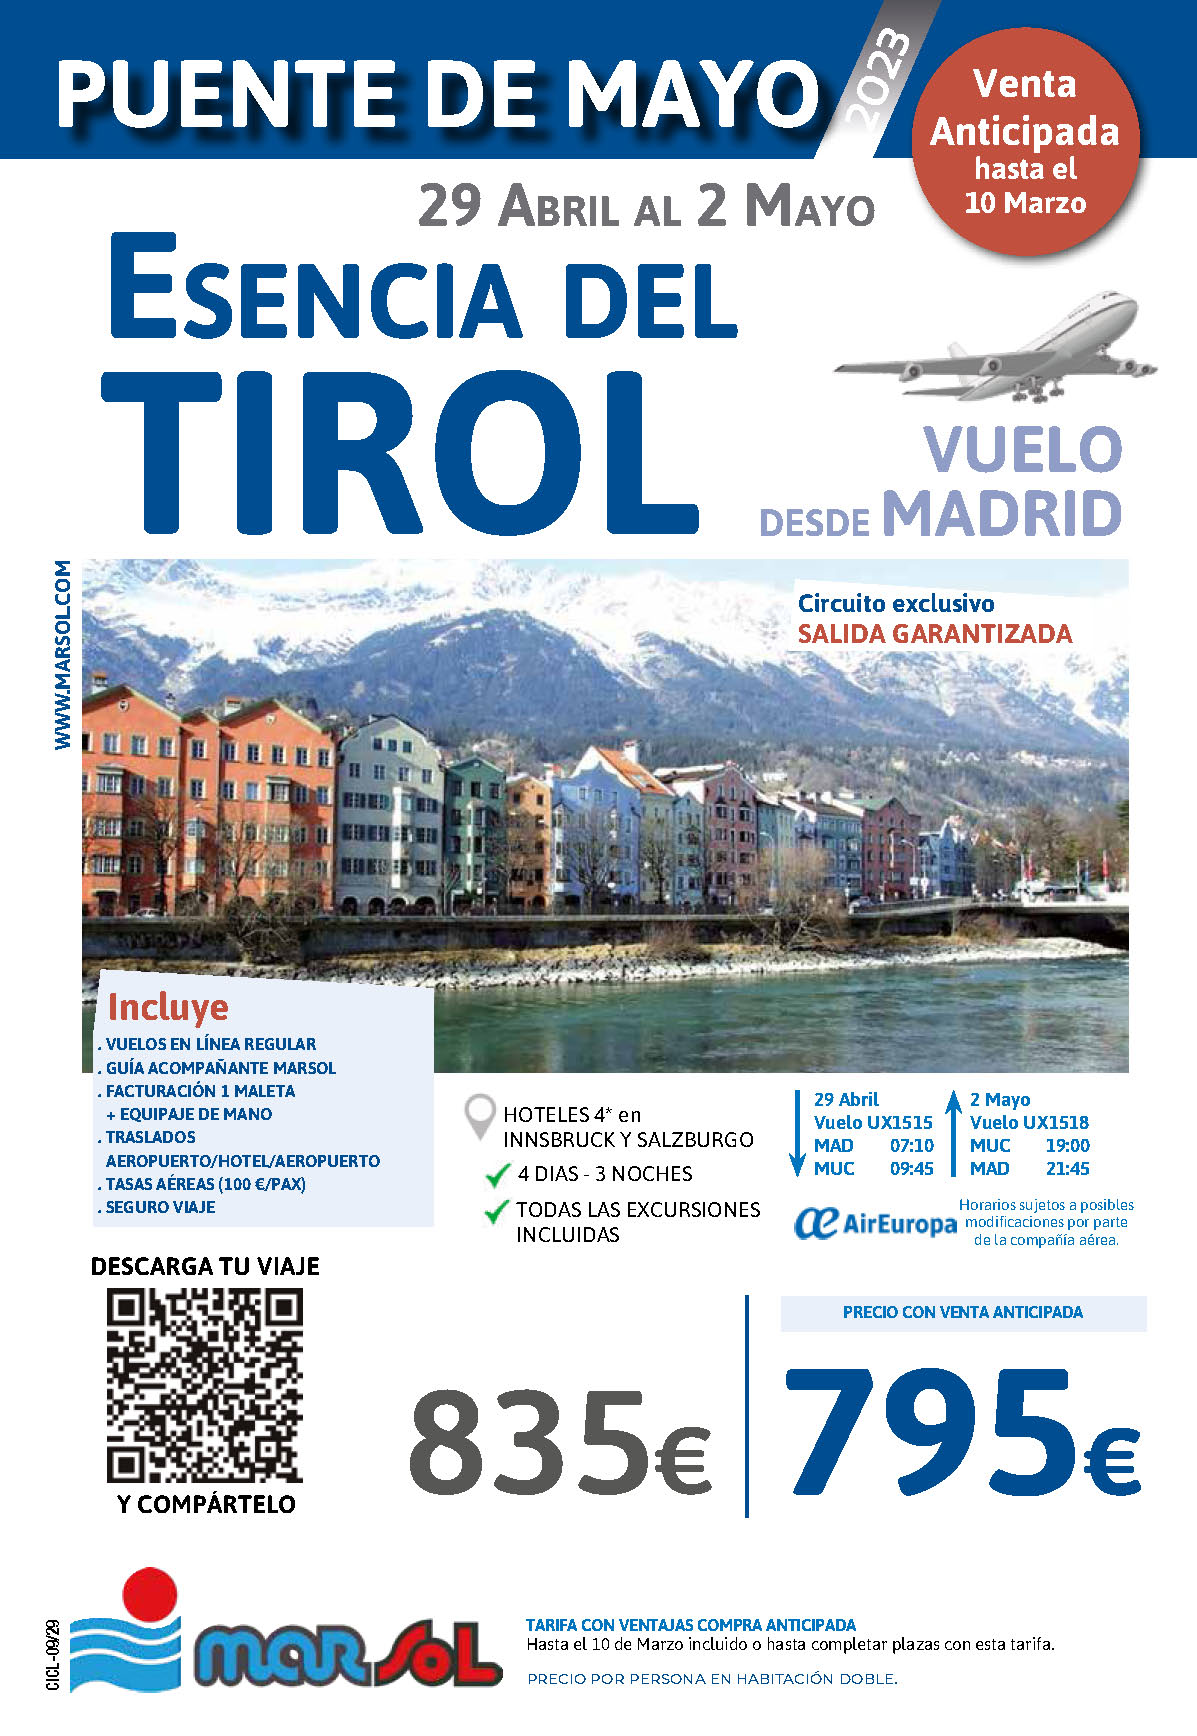 Oferta Marsol Puente de Mayo 2023 Esencia del Tirol 4 dias salida en vuelo directo desde Madrid